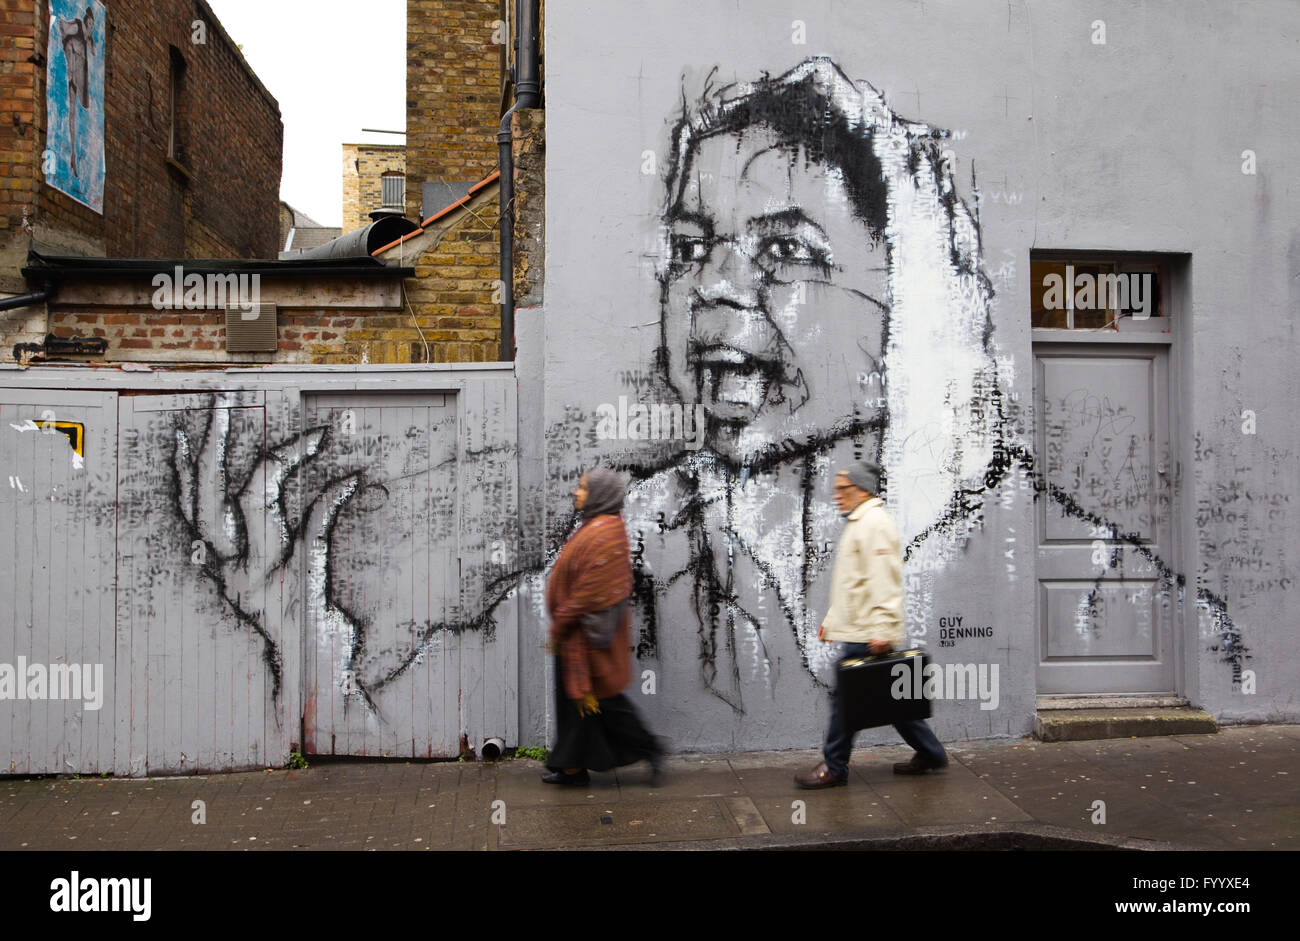 2 asiatischen Menschen vorbei gehen. street art auf eine Wand im Hanbury Street, London E1 Stockfoto